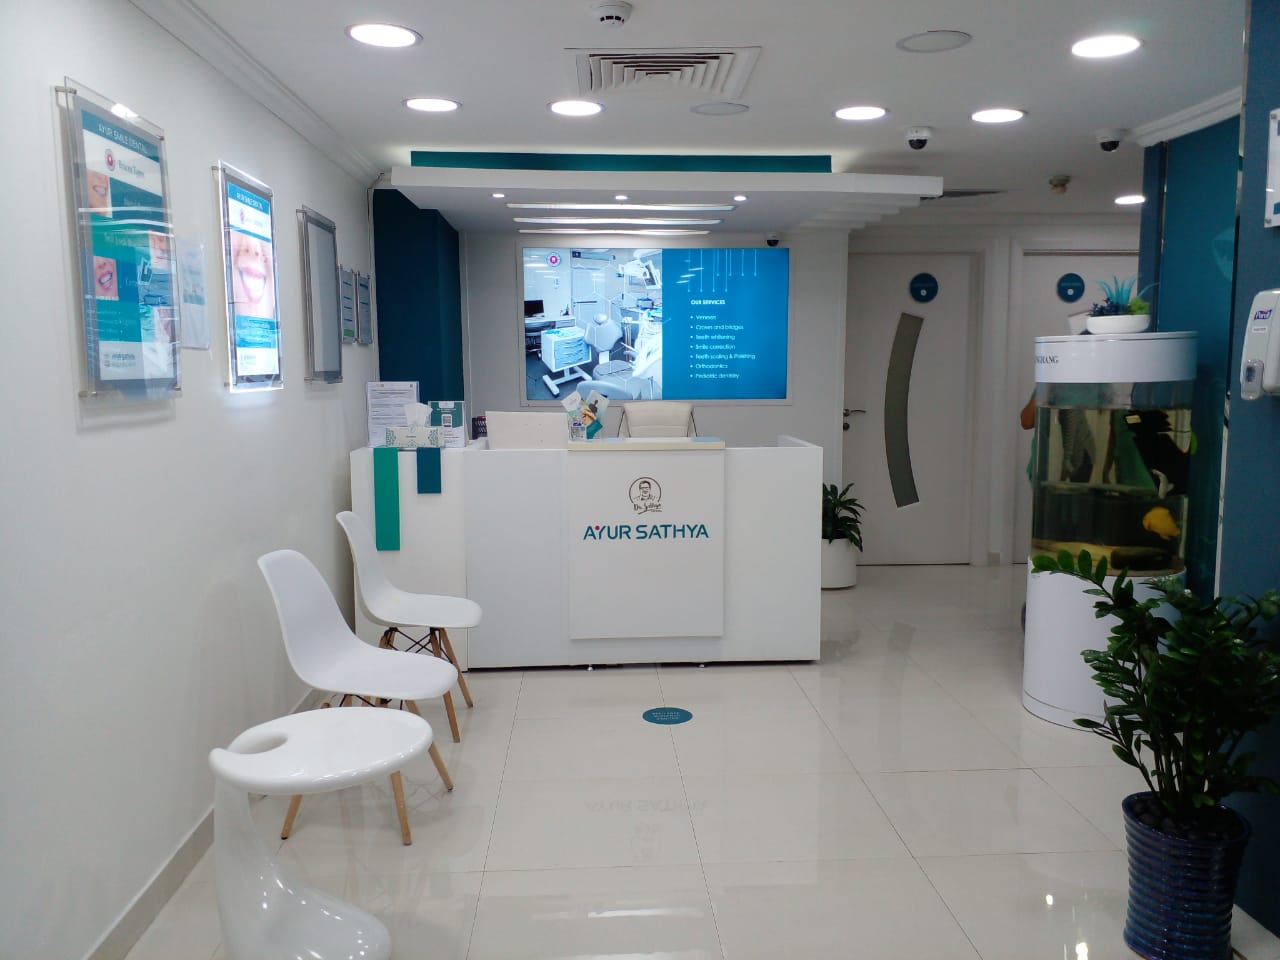 Ayur Sathya Polyclinic in Bur Dubai